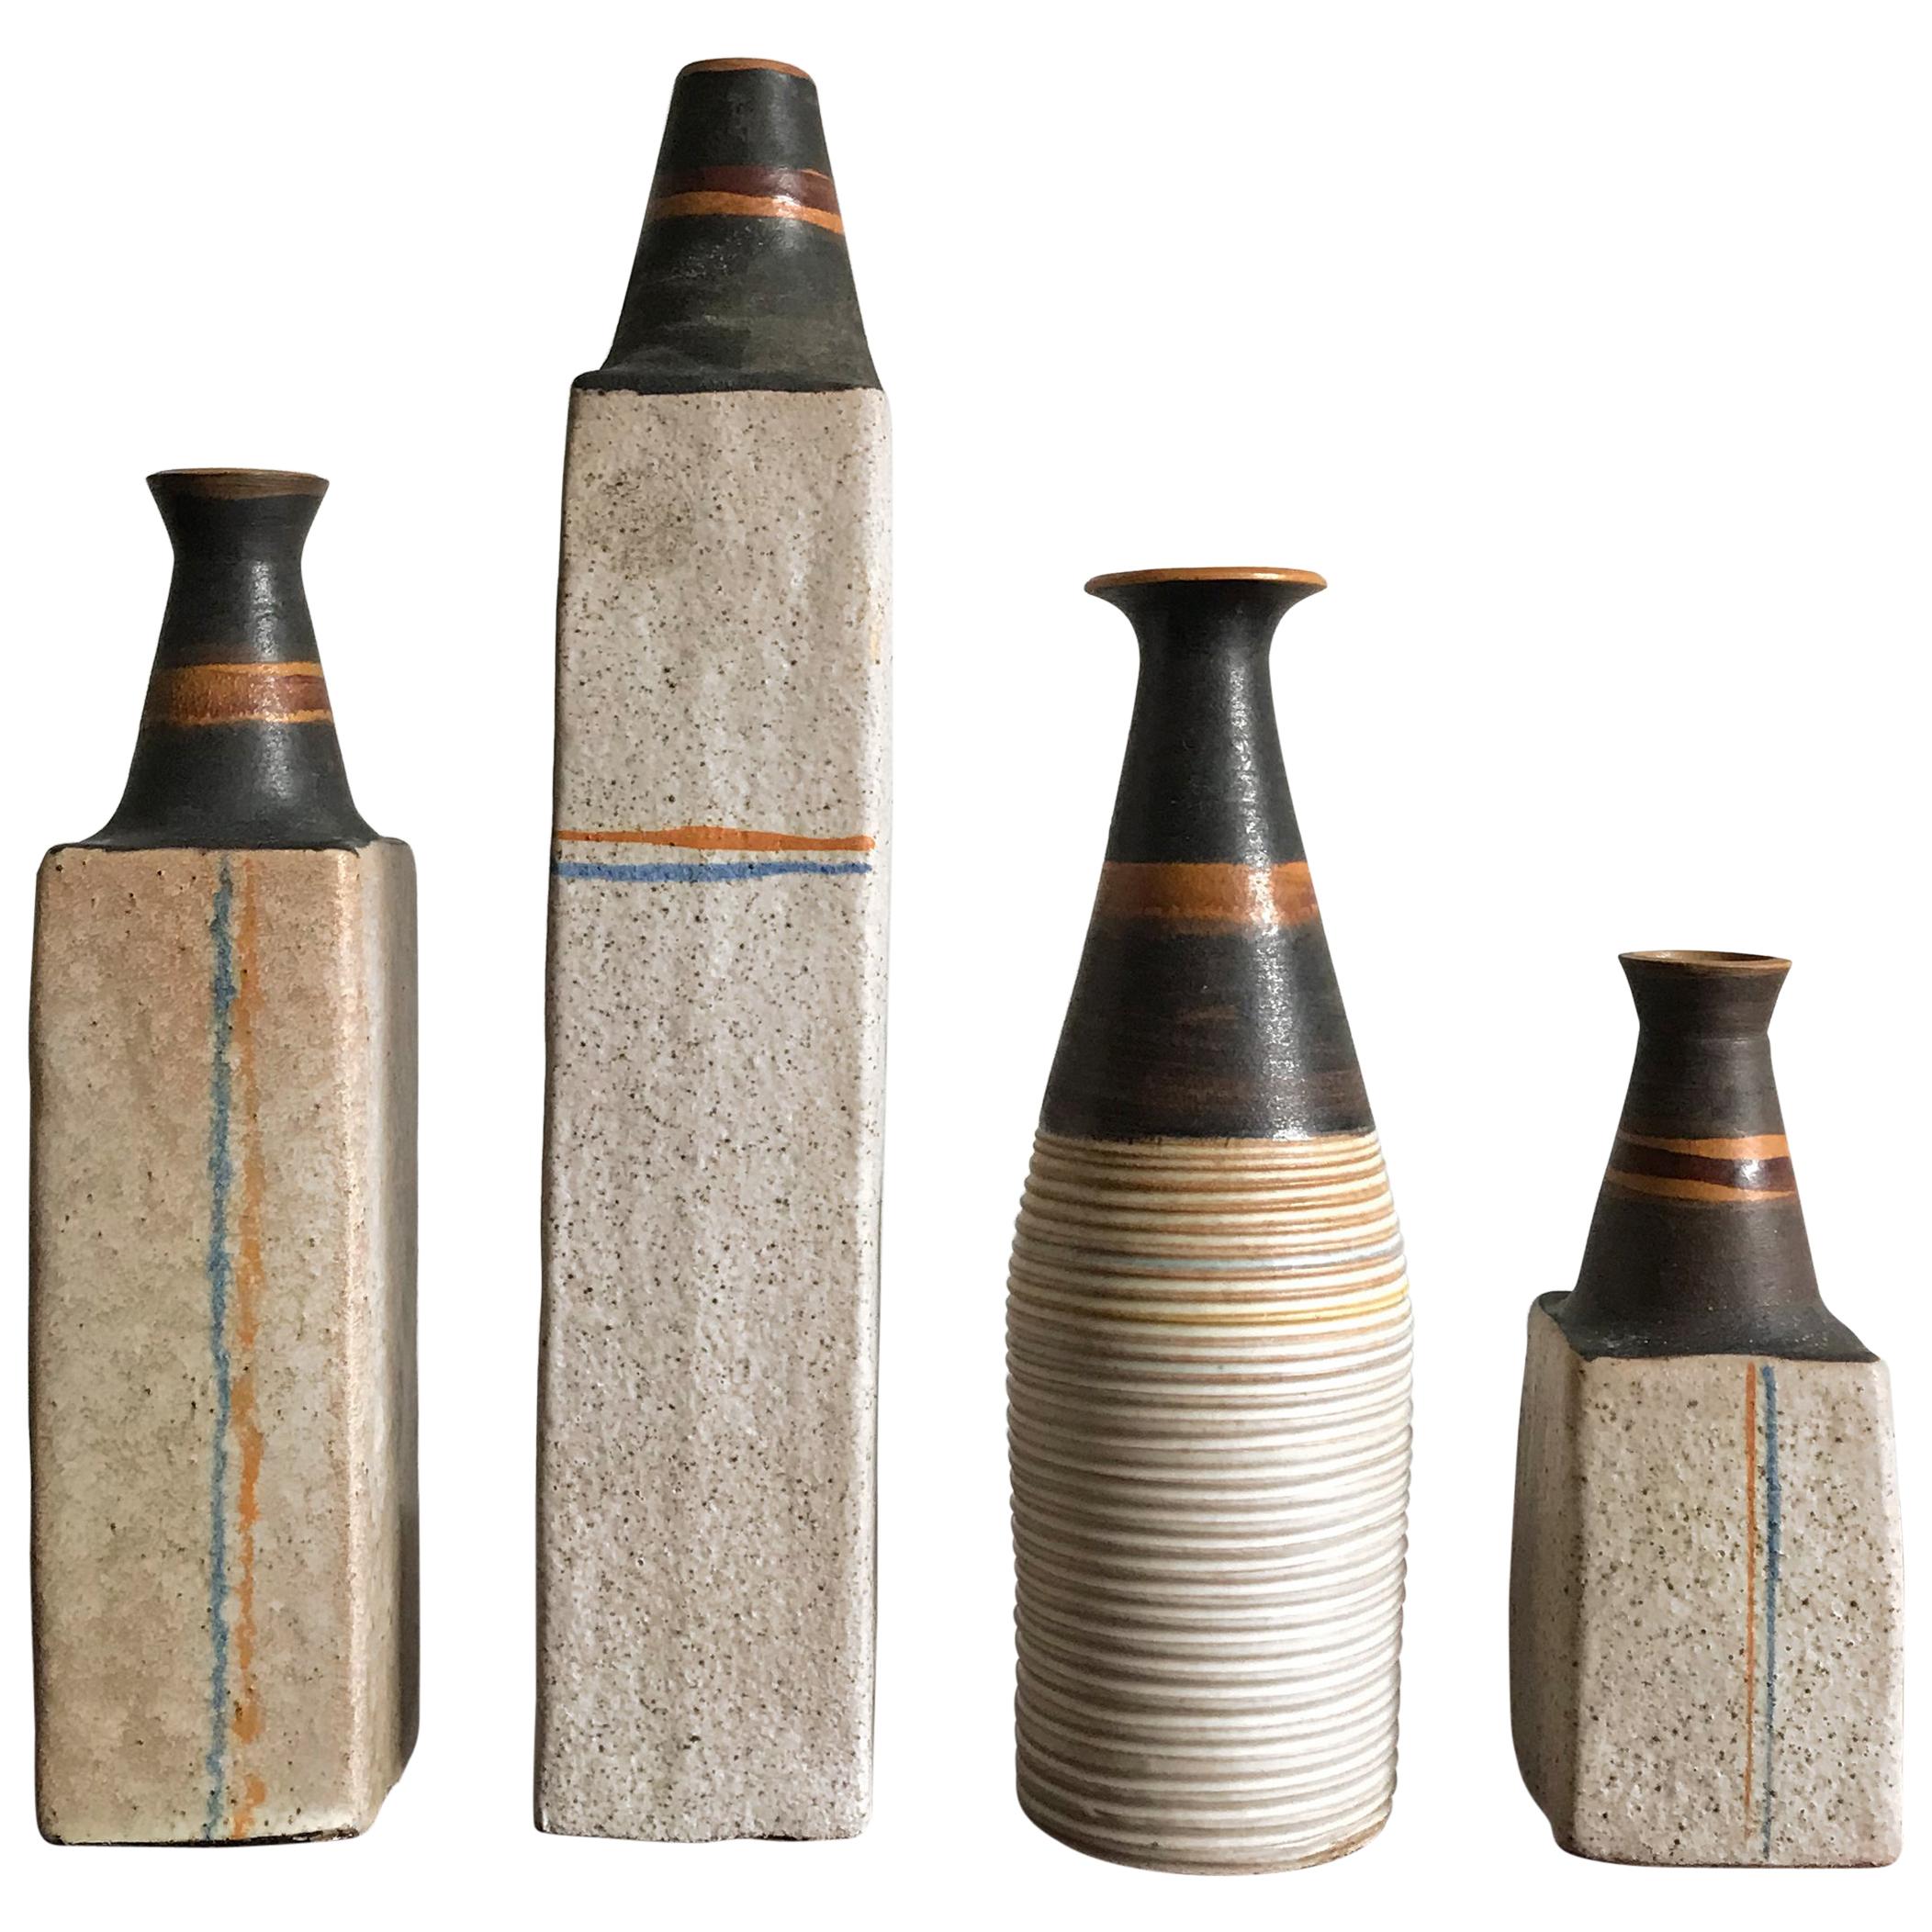 Ivo Sassi Mid-Century Modern Design Italian Ceramic Vases Bottles Set, 1950s For Sale